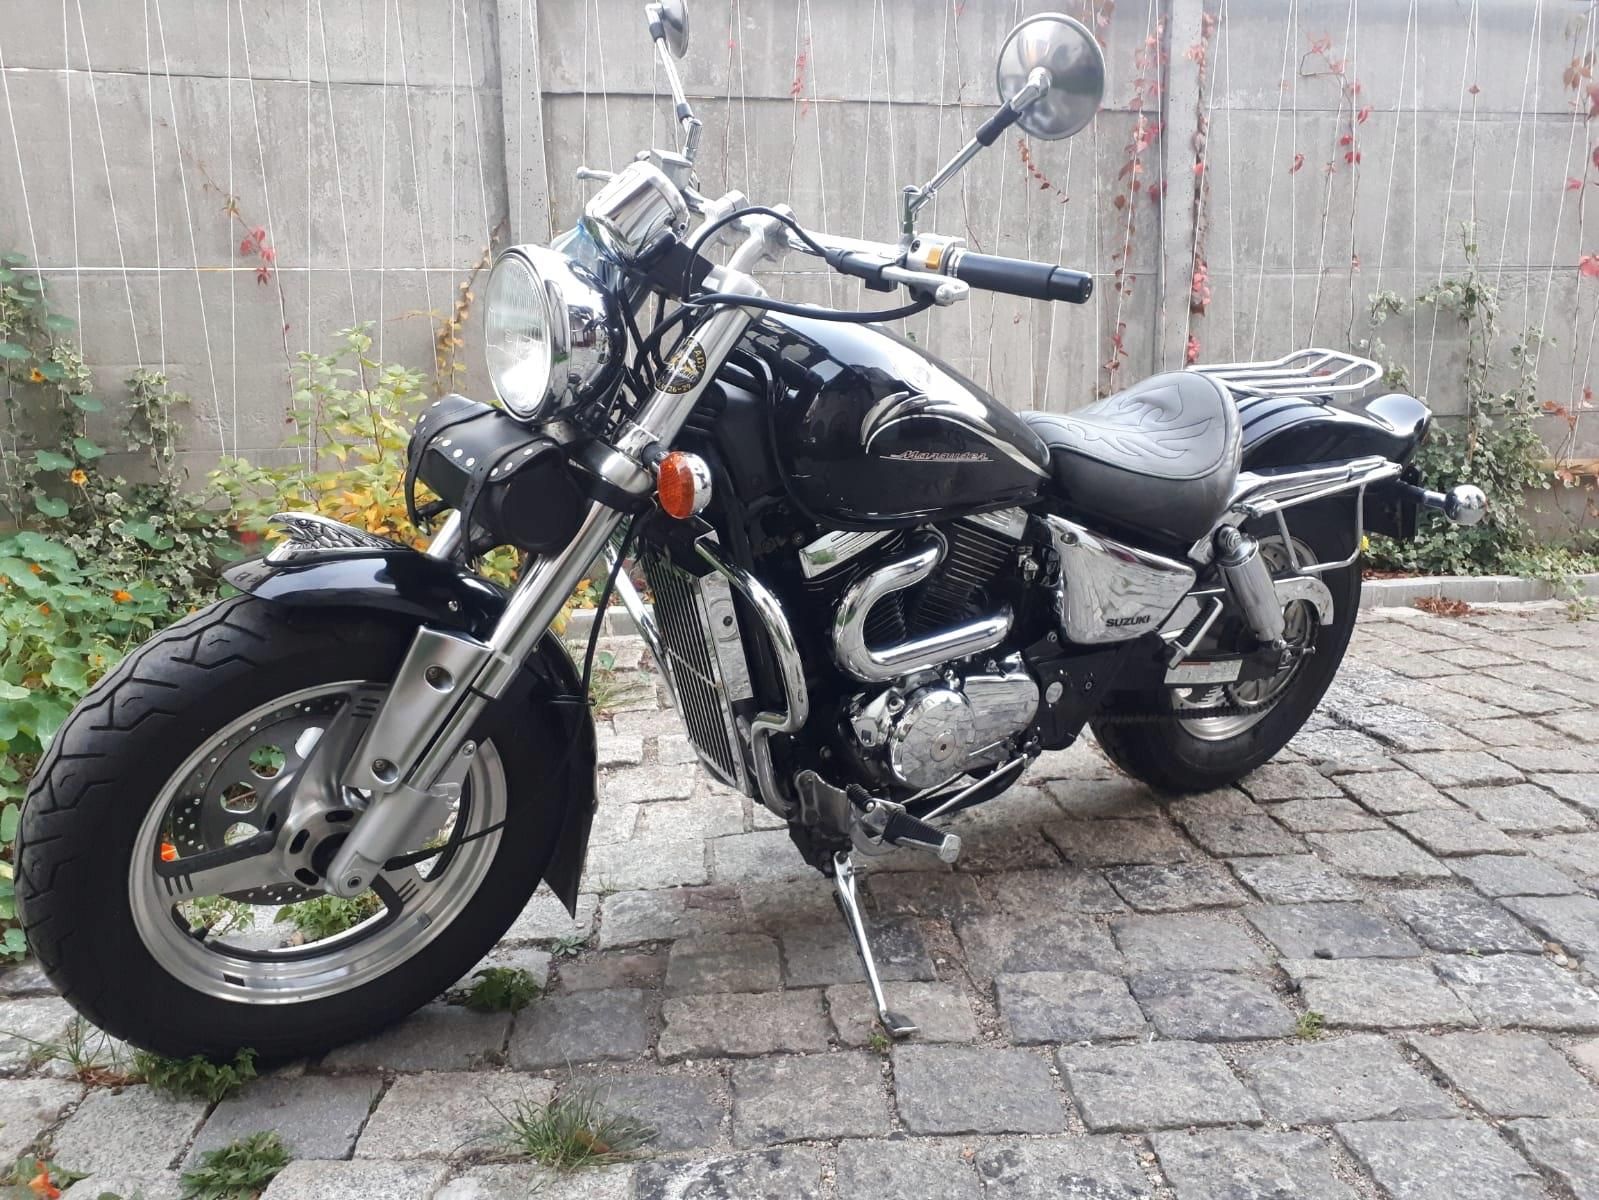 Suzuki Marauder Vz 800 Af Motocykl Moc 53 - Opinie I Ceny Na Ceneo.pl